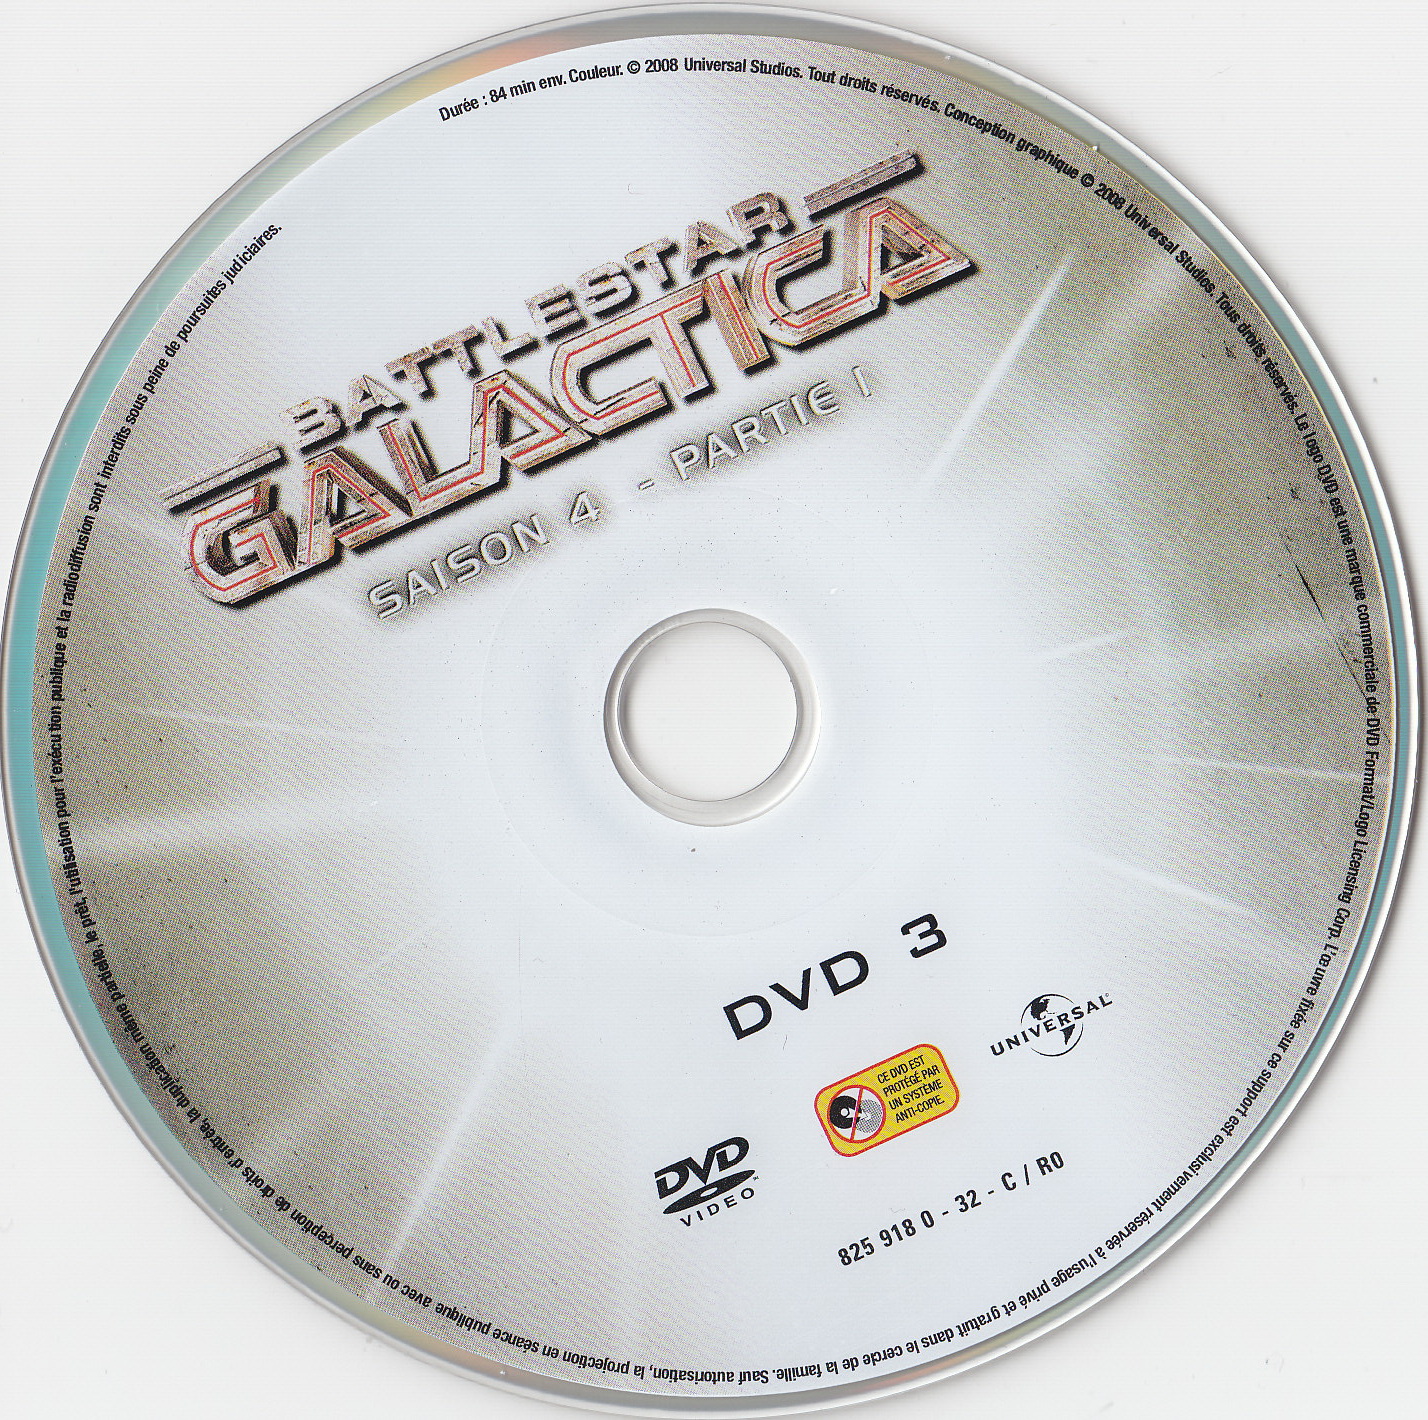 Battlestar Galactica Saison 4 partie 1 DVD 3